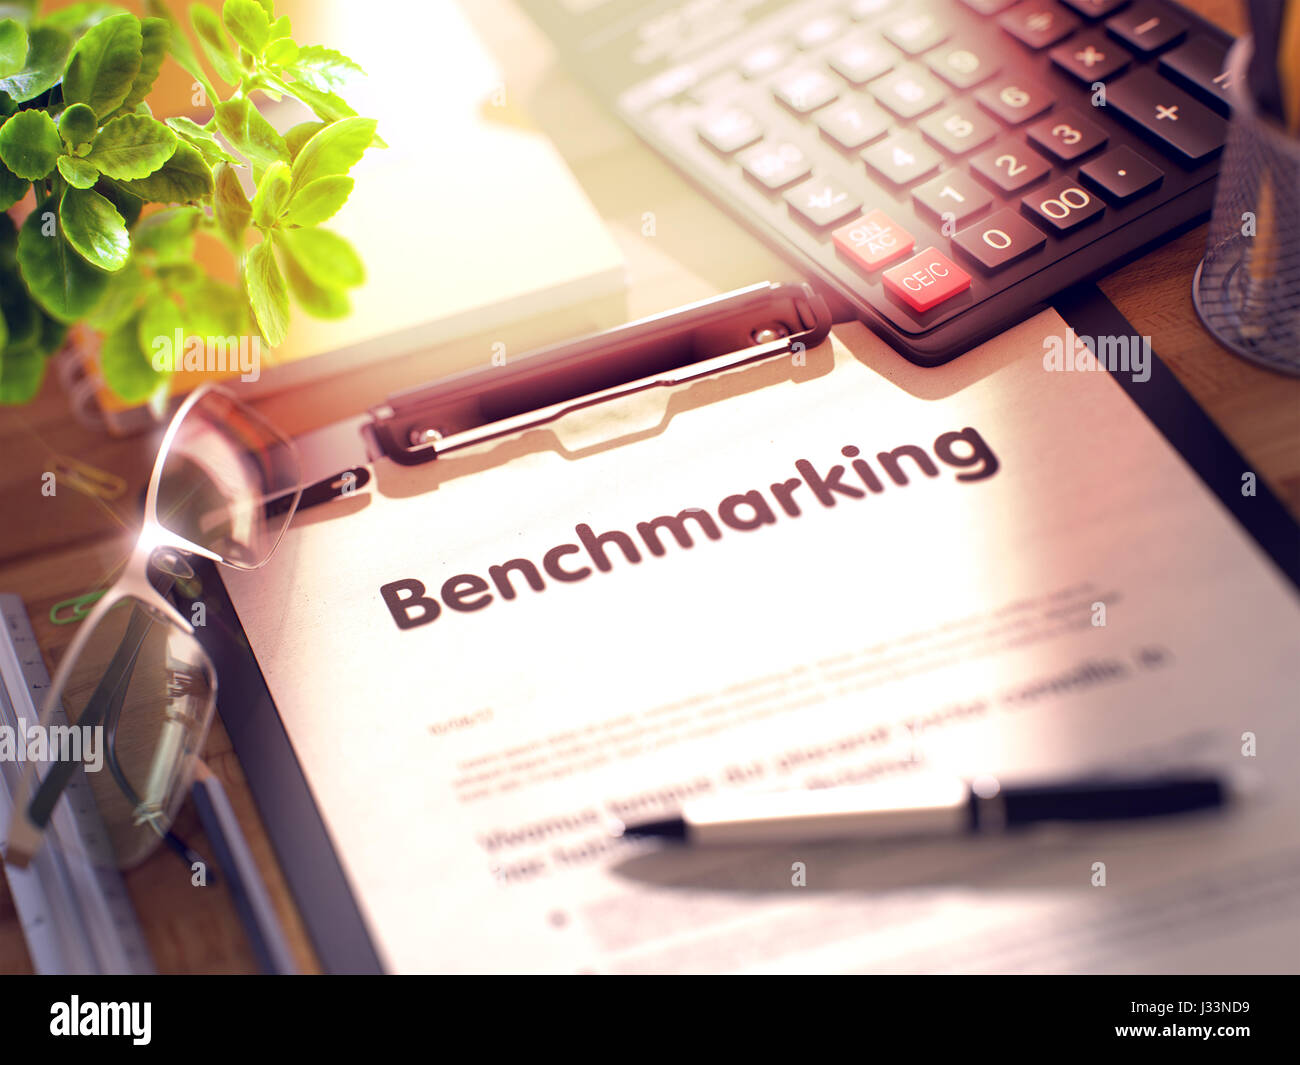 Benchmarking-Konzept auf Zwischenablage. 3D. Stockfoto